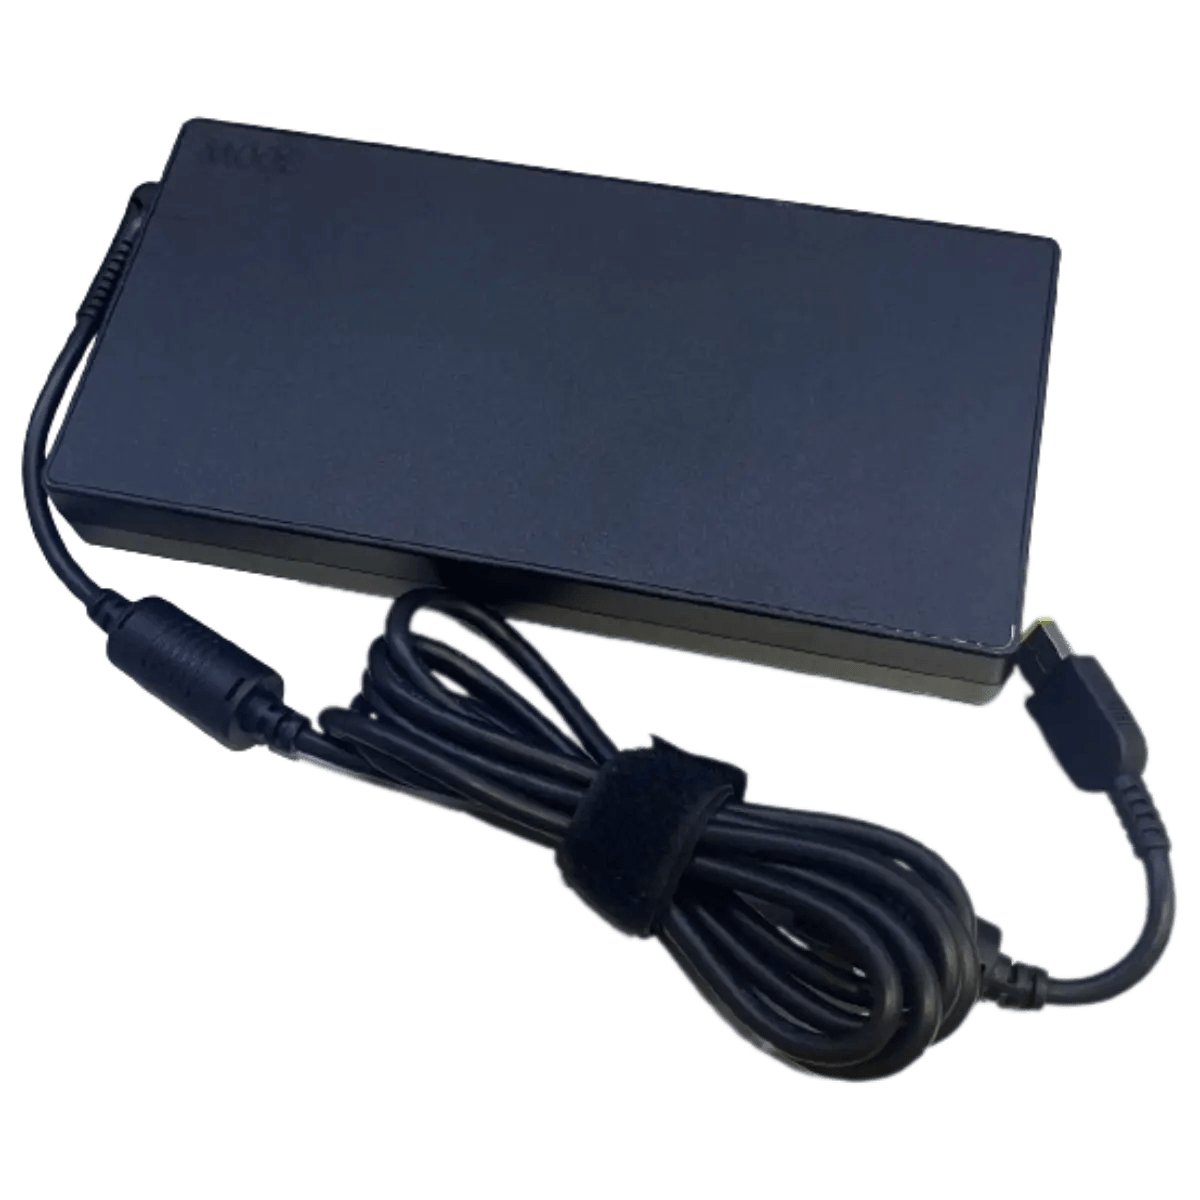 Chargeur ordinateur portable pour Lenovo IBM G585 2181 - 1001Piles Batteries